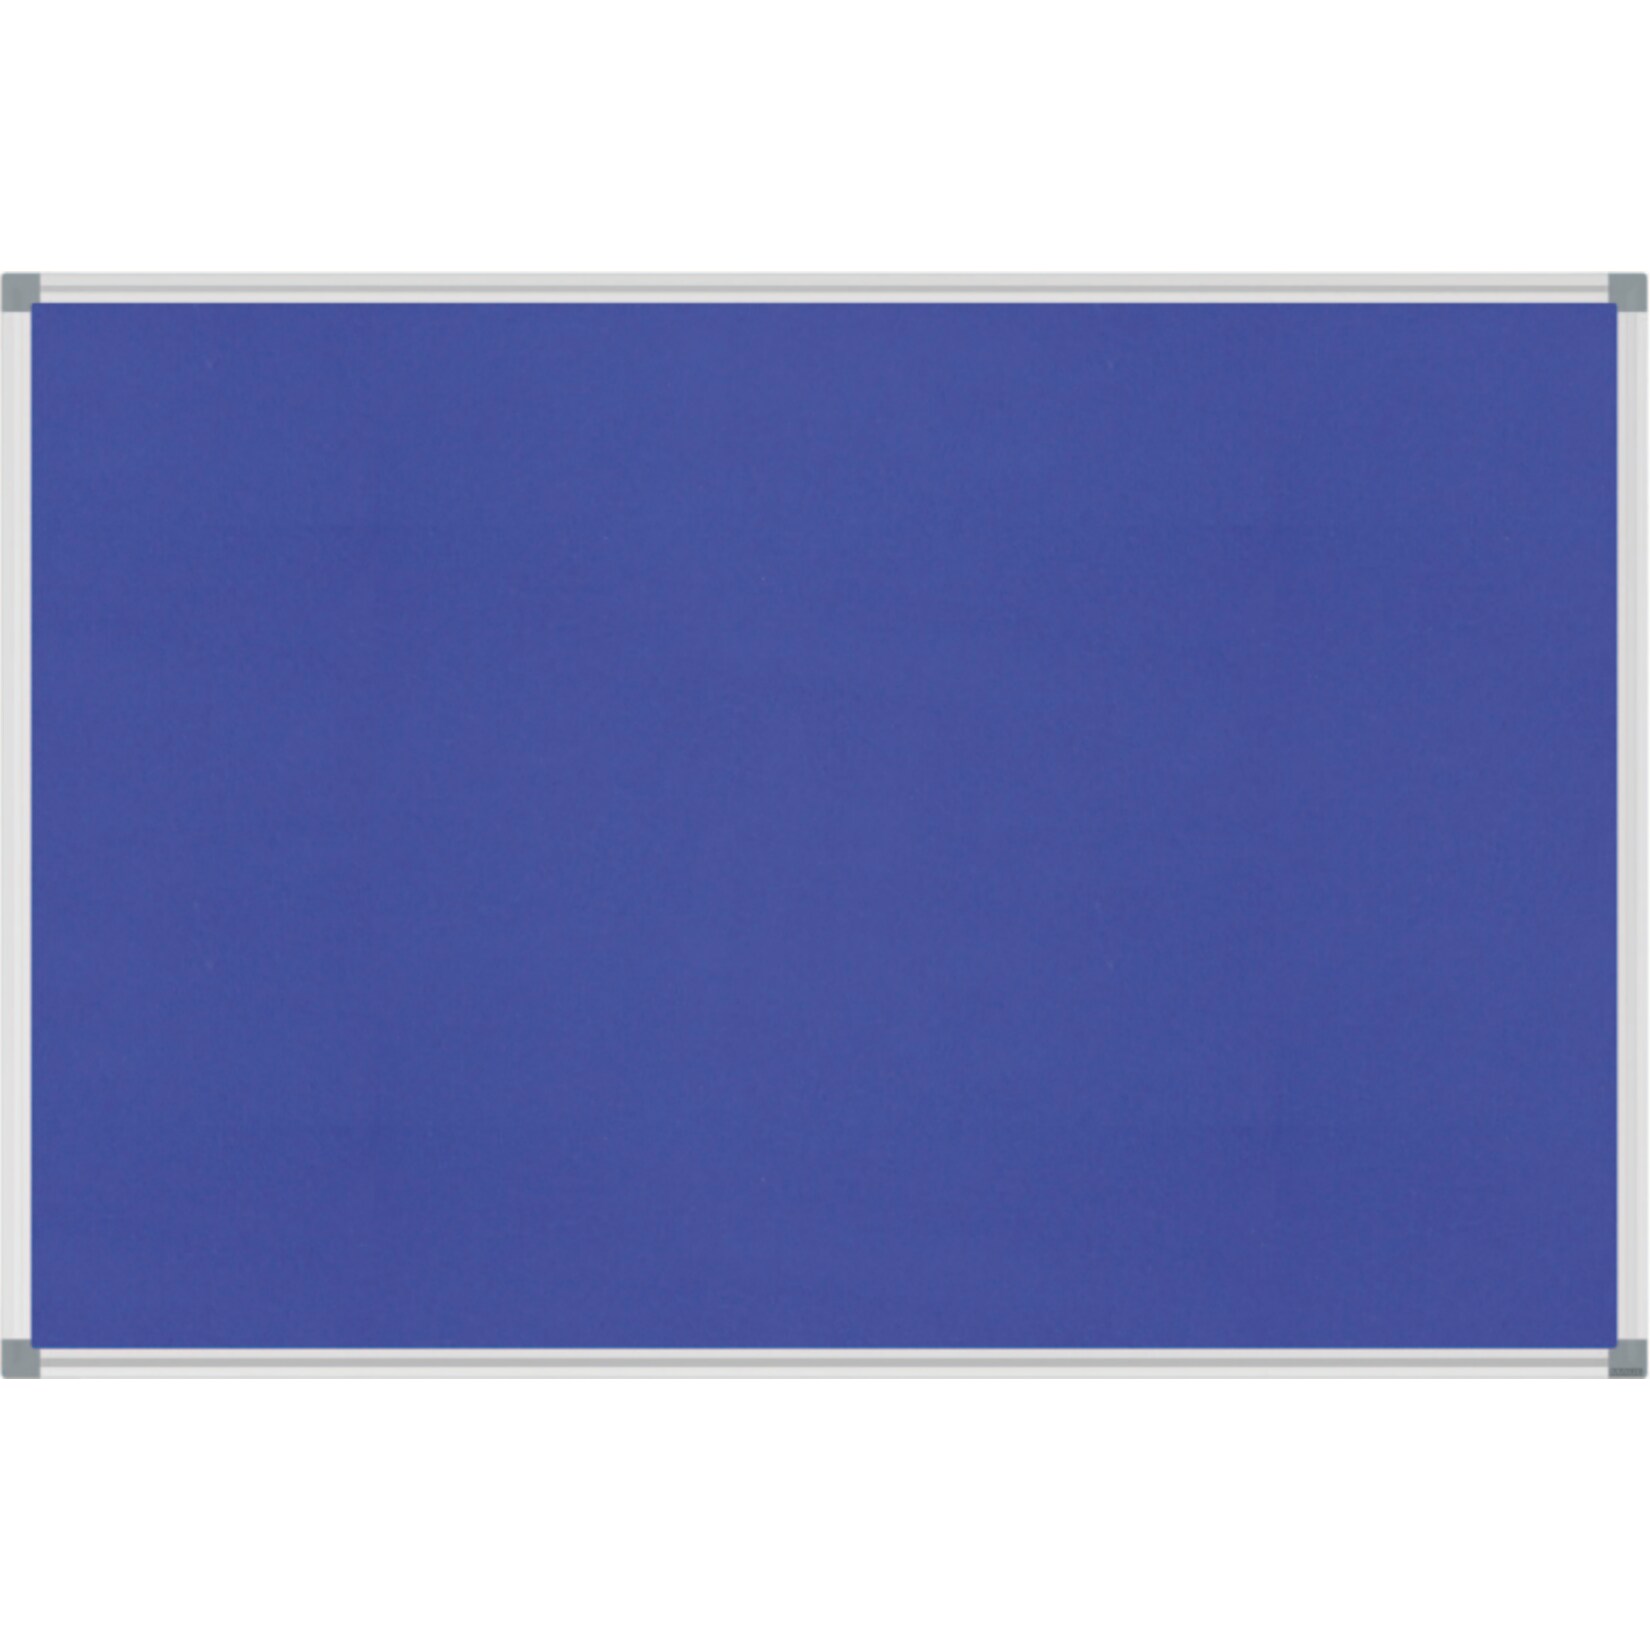 MAUL Pinnboard MAULstandard Textil, 90 x 120 cm  - blau